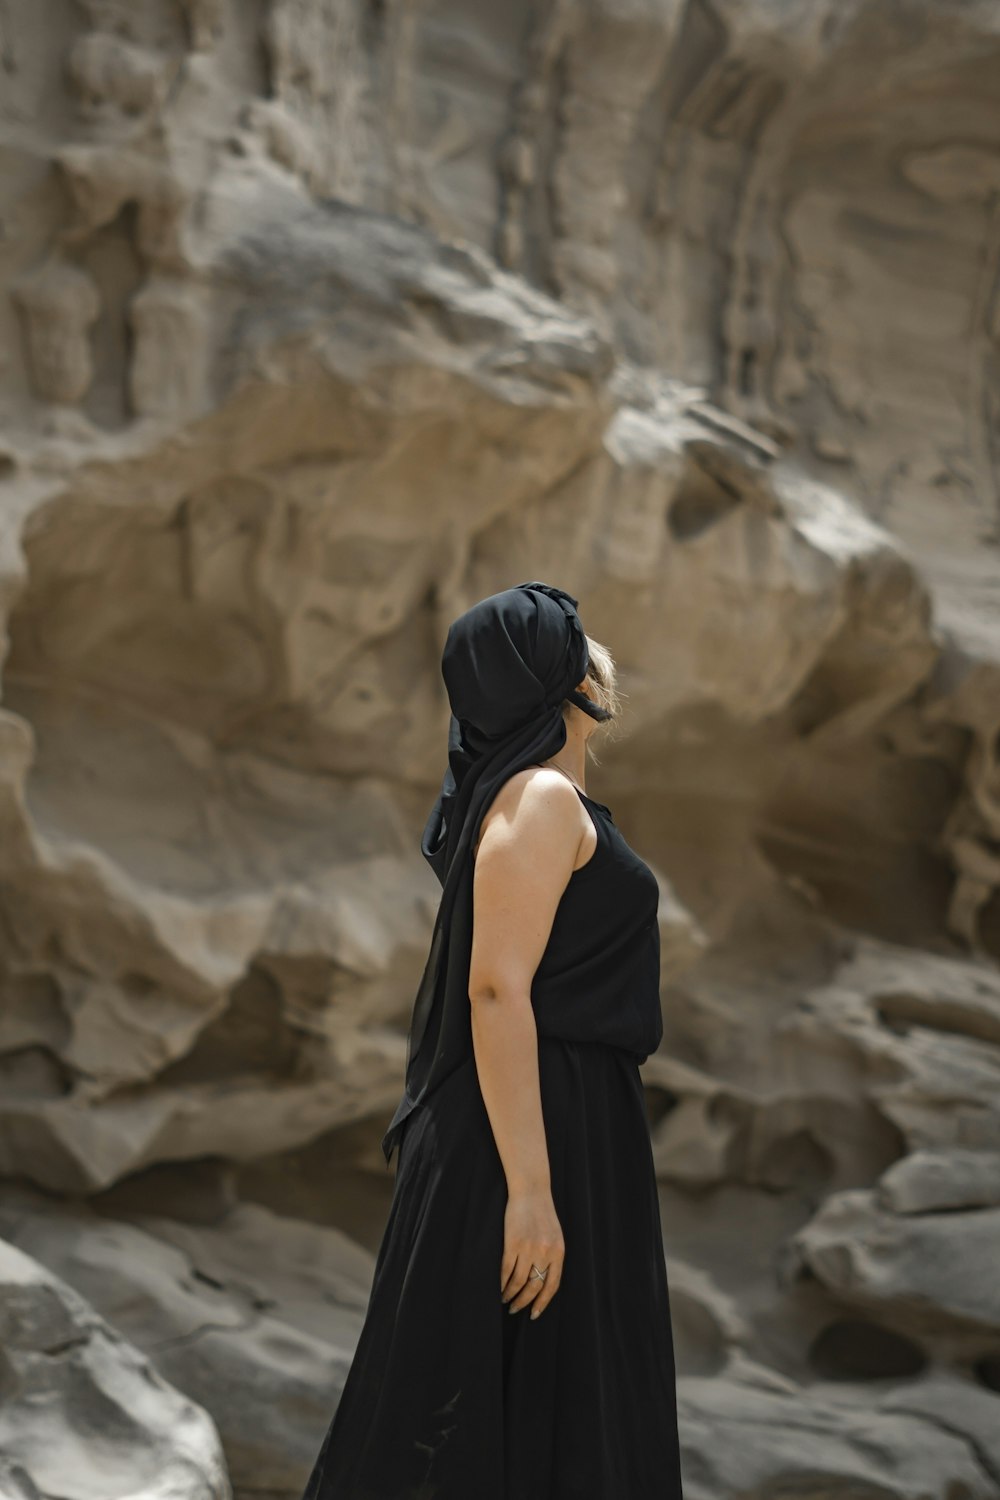 Une femme en robe noire debout devant une formation rocheuse